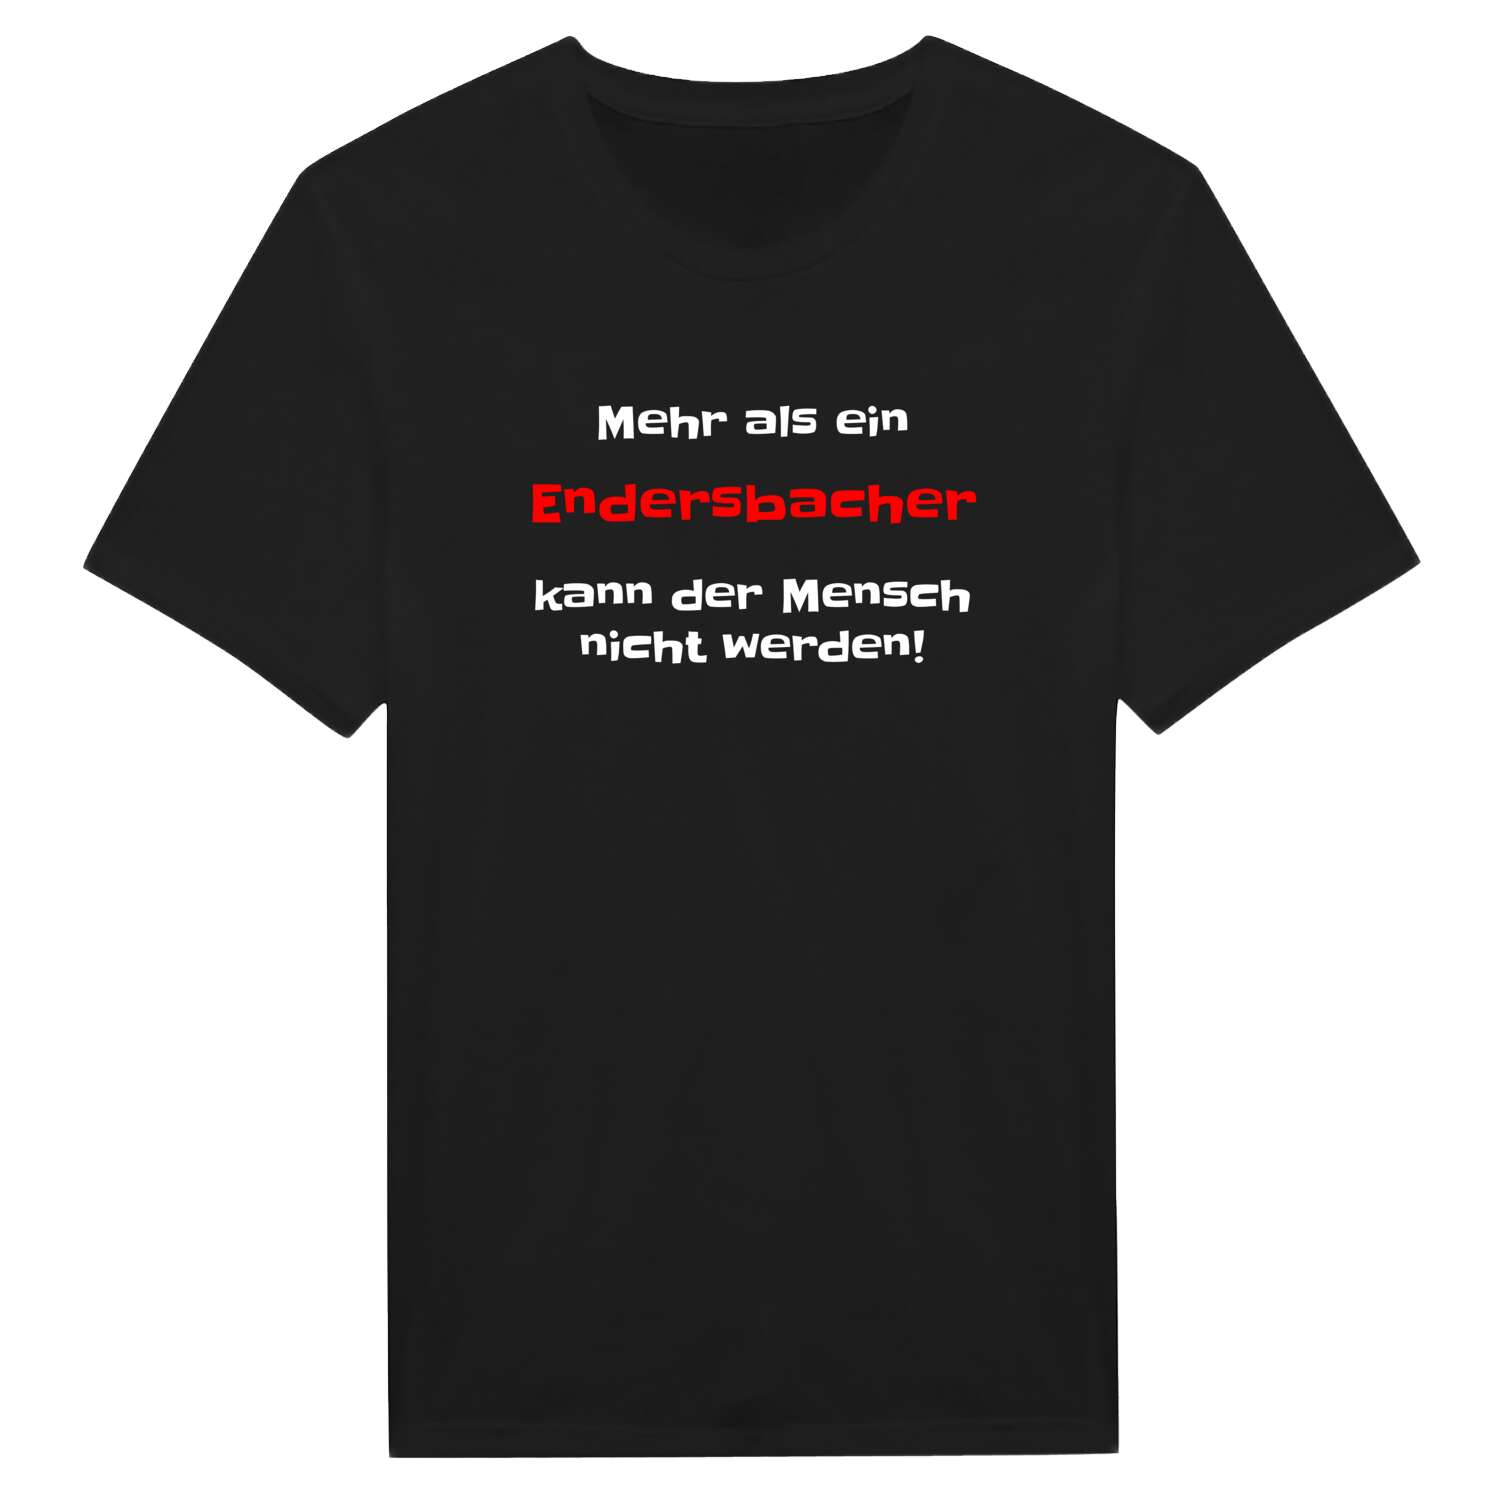 Endersbach T-Shirt »Mehr als ein«